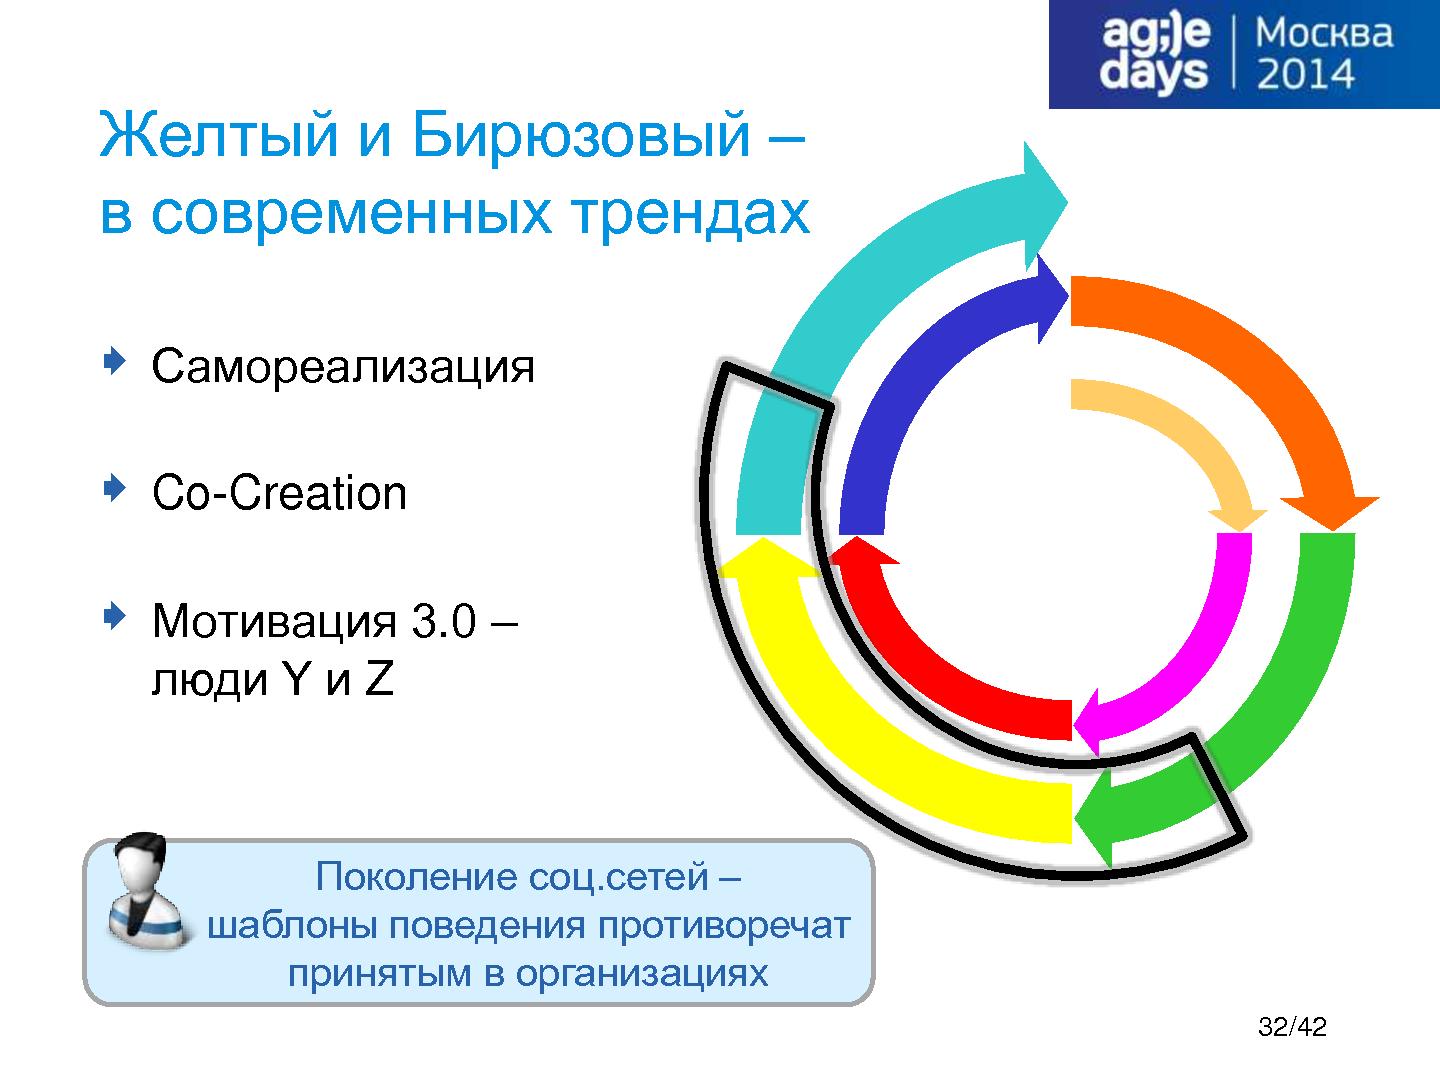 Файл:Спиральная динамика — логика развития системы ценностей (Максим Цепков, AgileDays-2014).pdf